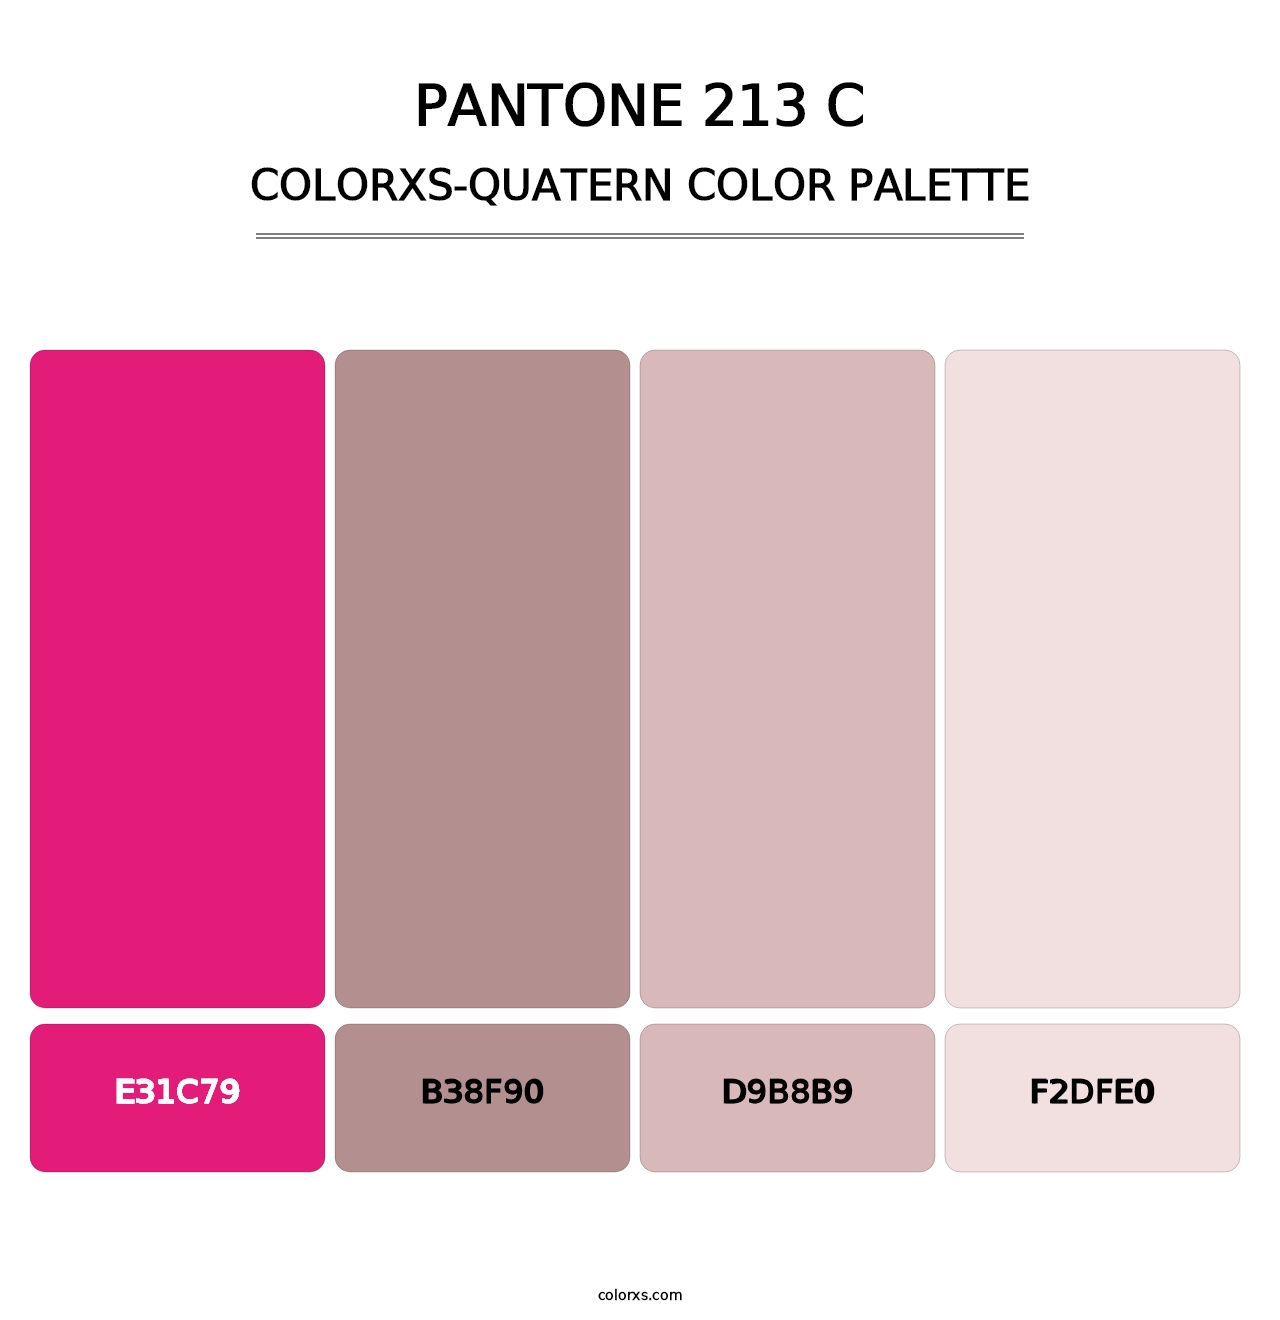 PANTONE 213 C - Colorxs Quatern Palette